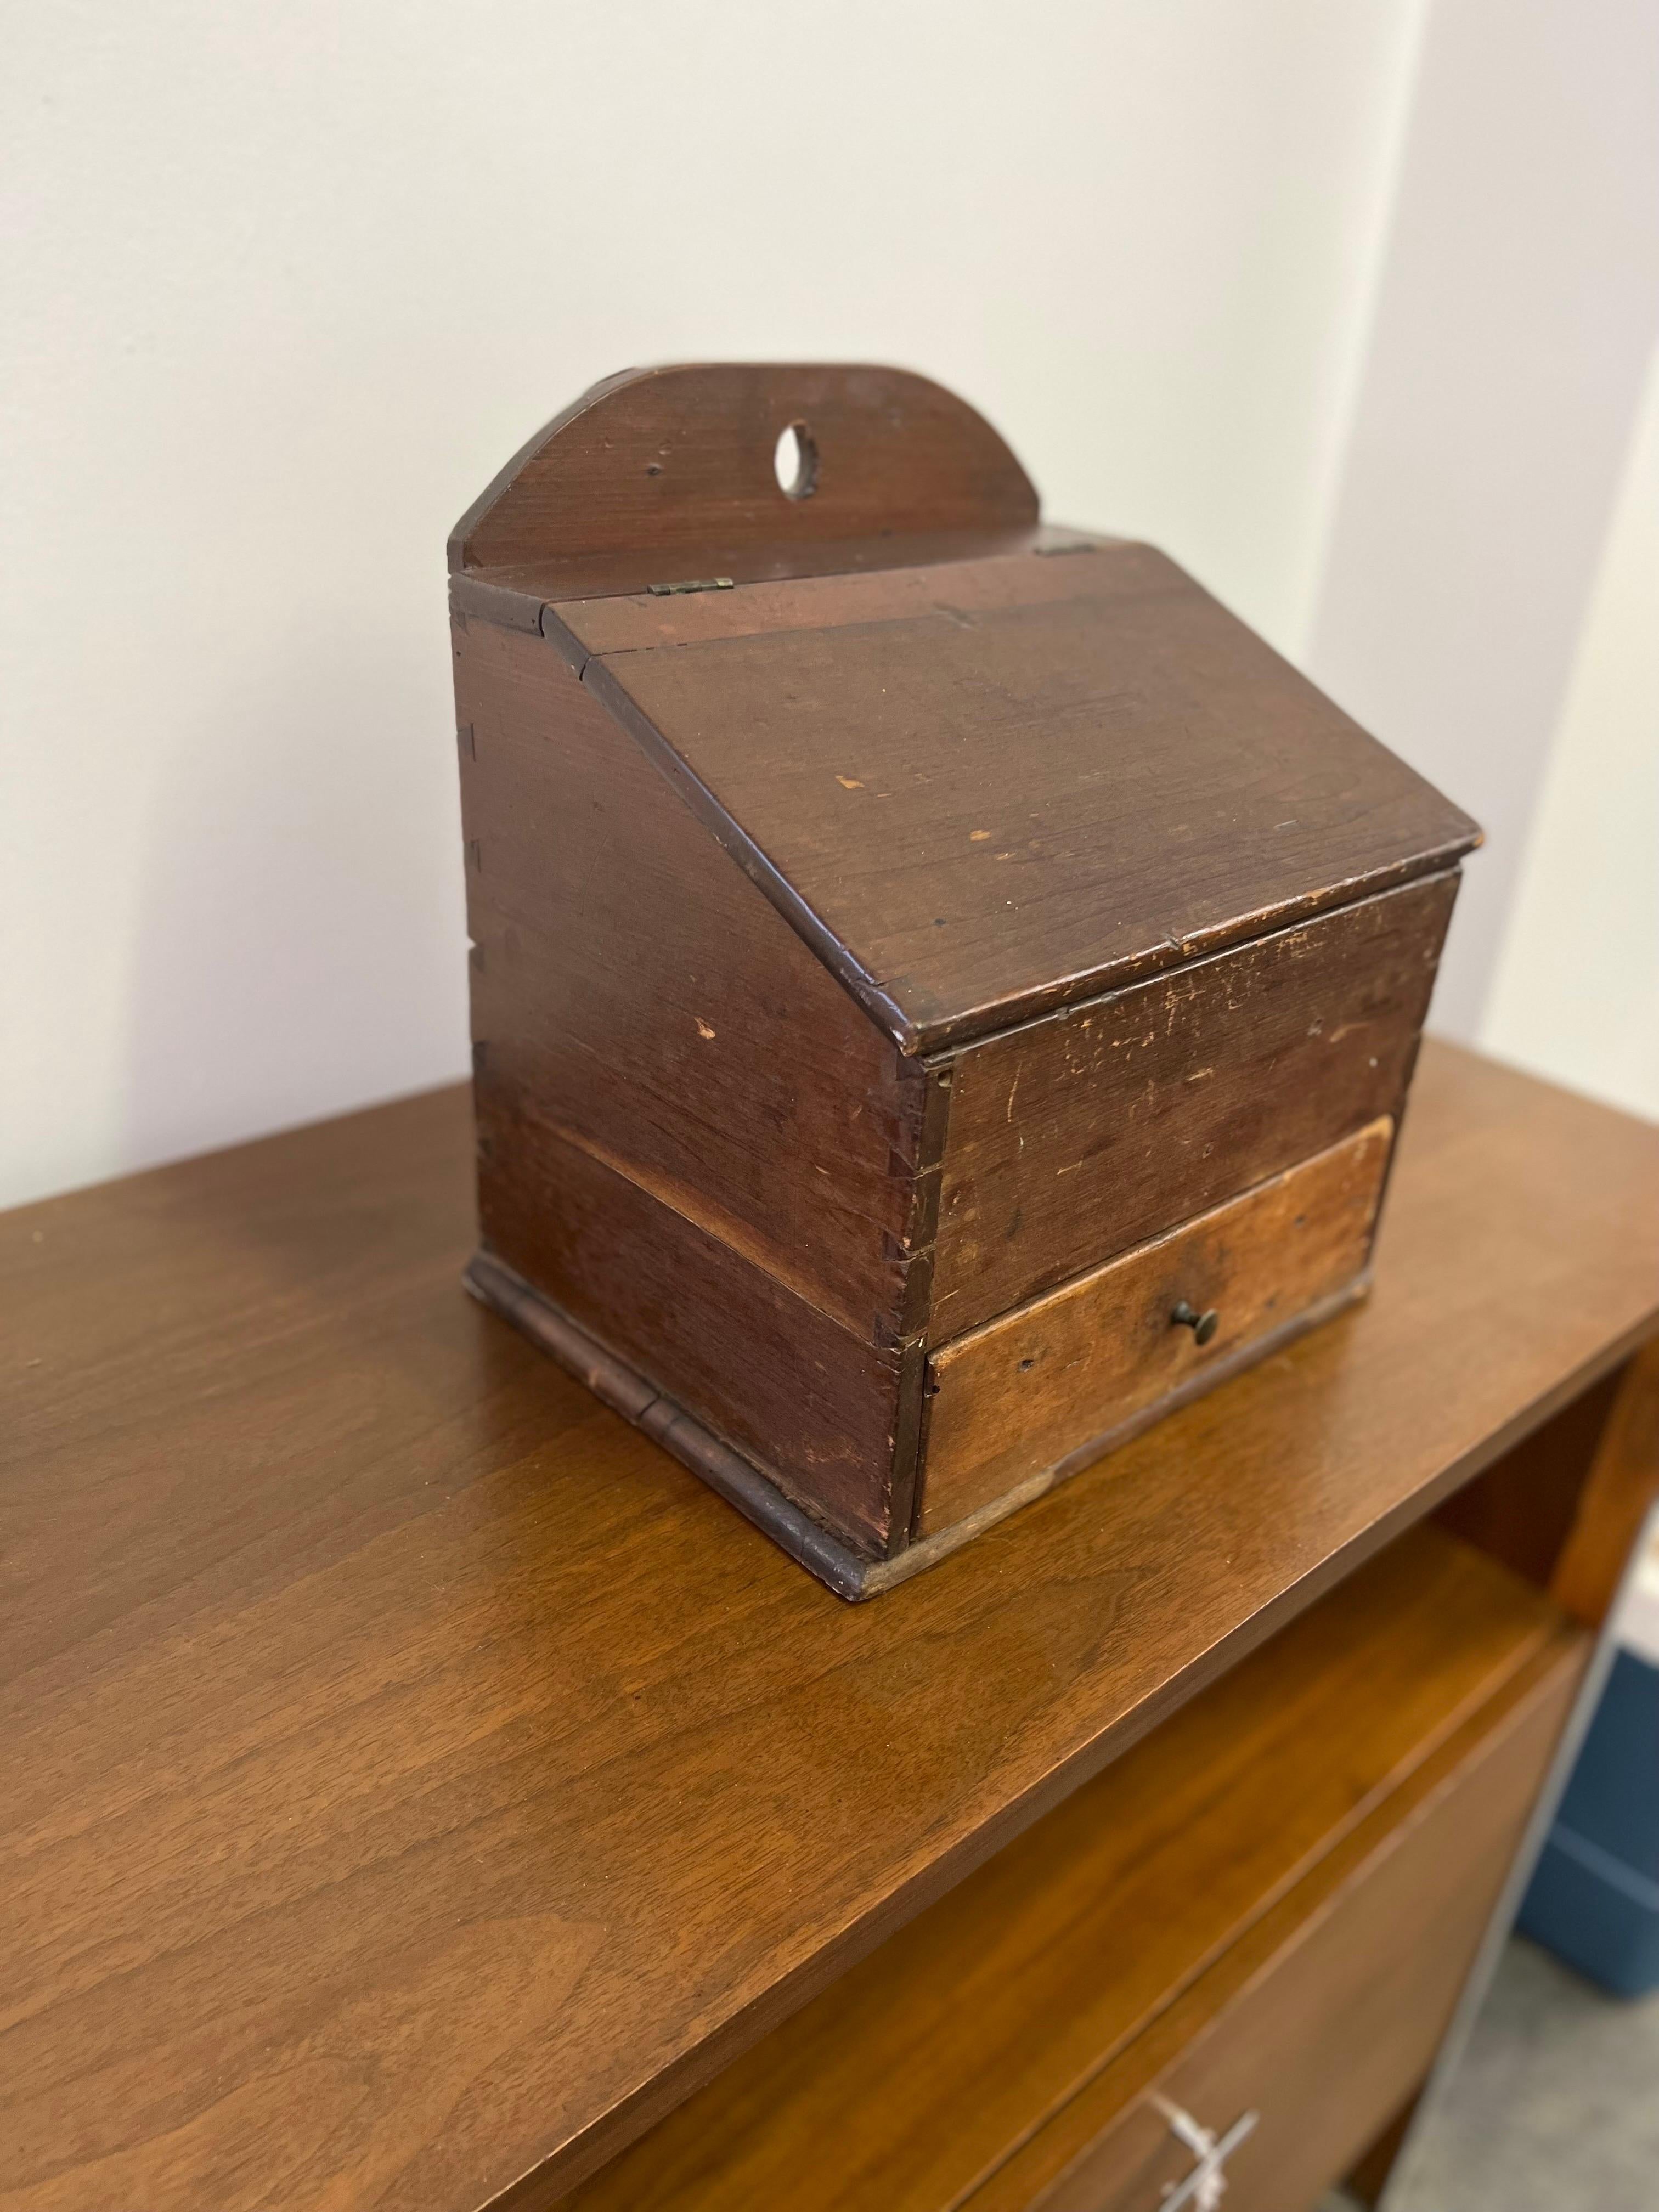 Boîte à épices Shaker ancienne

Cette boîte à épices Shaker est unique et ancienne. La pièce date des années 1800. Cette pièce est dotée d'un couvercle relevable et d'un seul tiroir. Le tiroir est divisé pour garder vos différentes épices